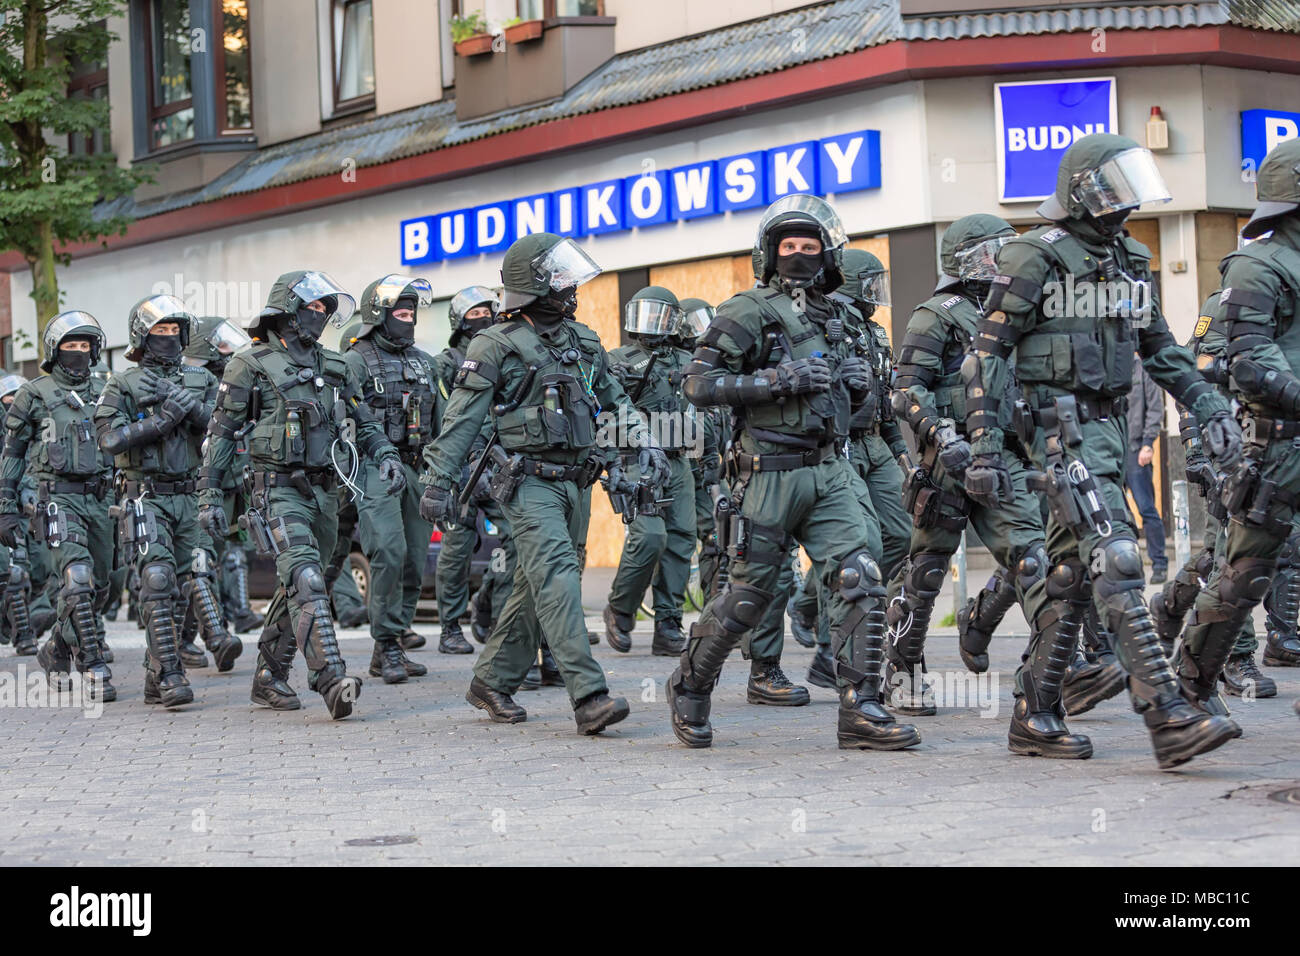 Eine Beweissicherungs- und Festnahmeeinheit der Polizei Baden-Württemberg im Einsatz während des G20-Gipfels in Hamburg Stock Photo